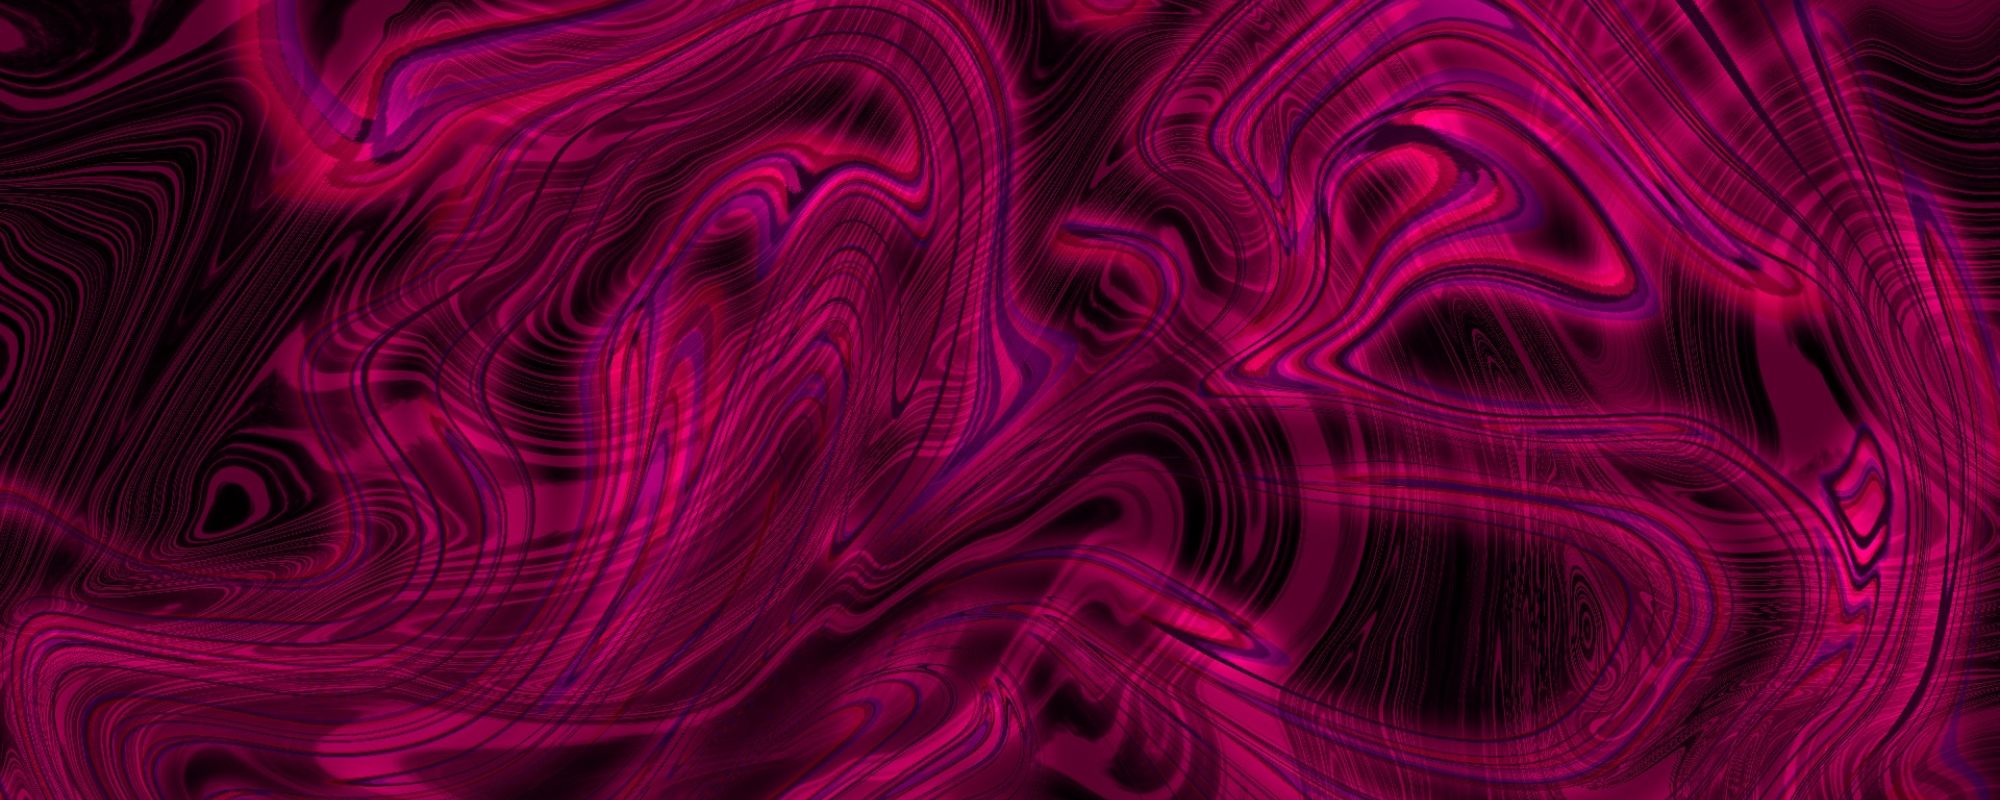 rosey swirl pattern